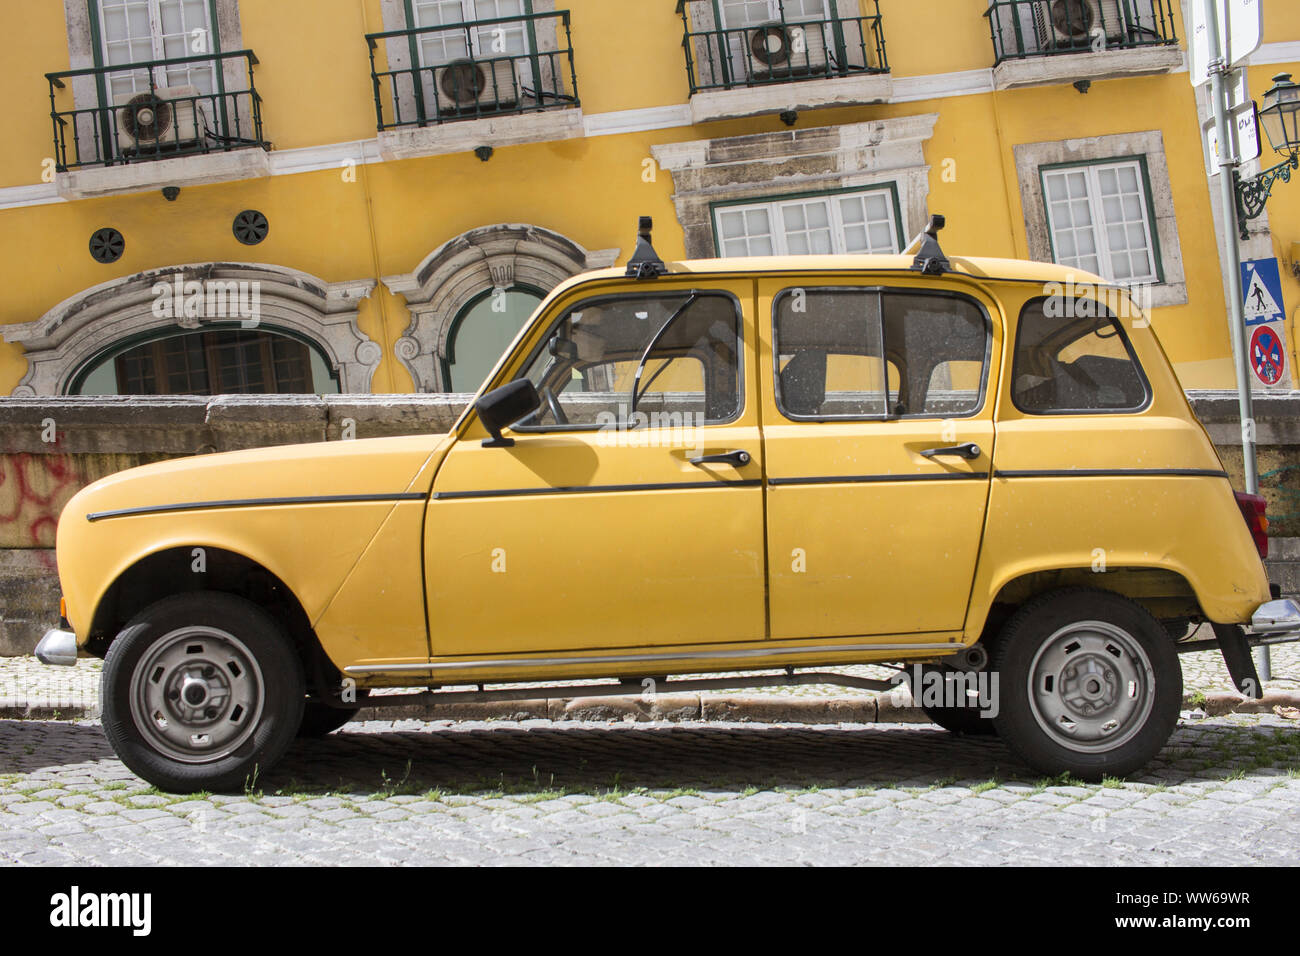 Dettaglio degli scatti da colorate strade di Lisbona, giallo auto davanti casa gialla parete. Foto Stock